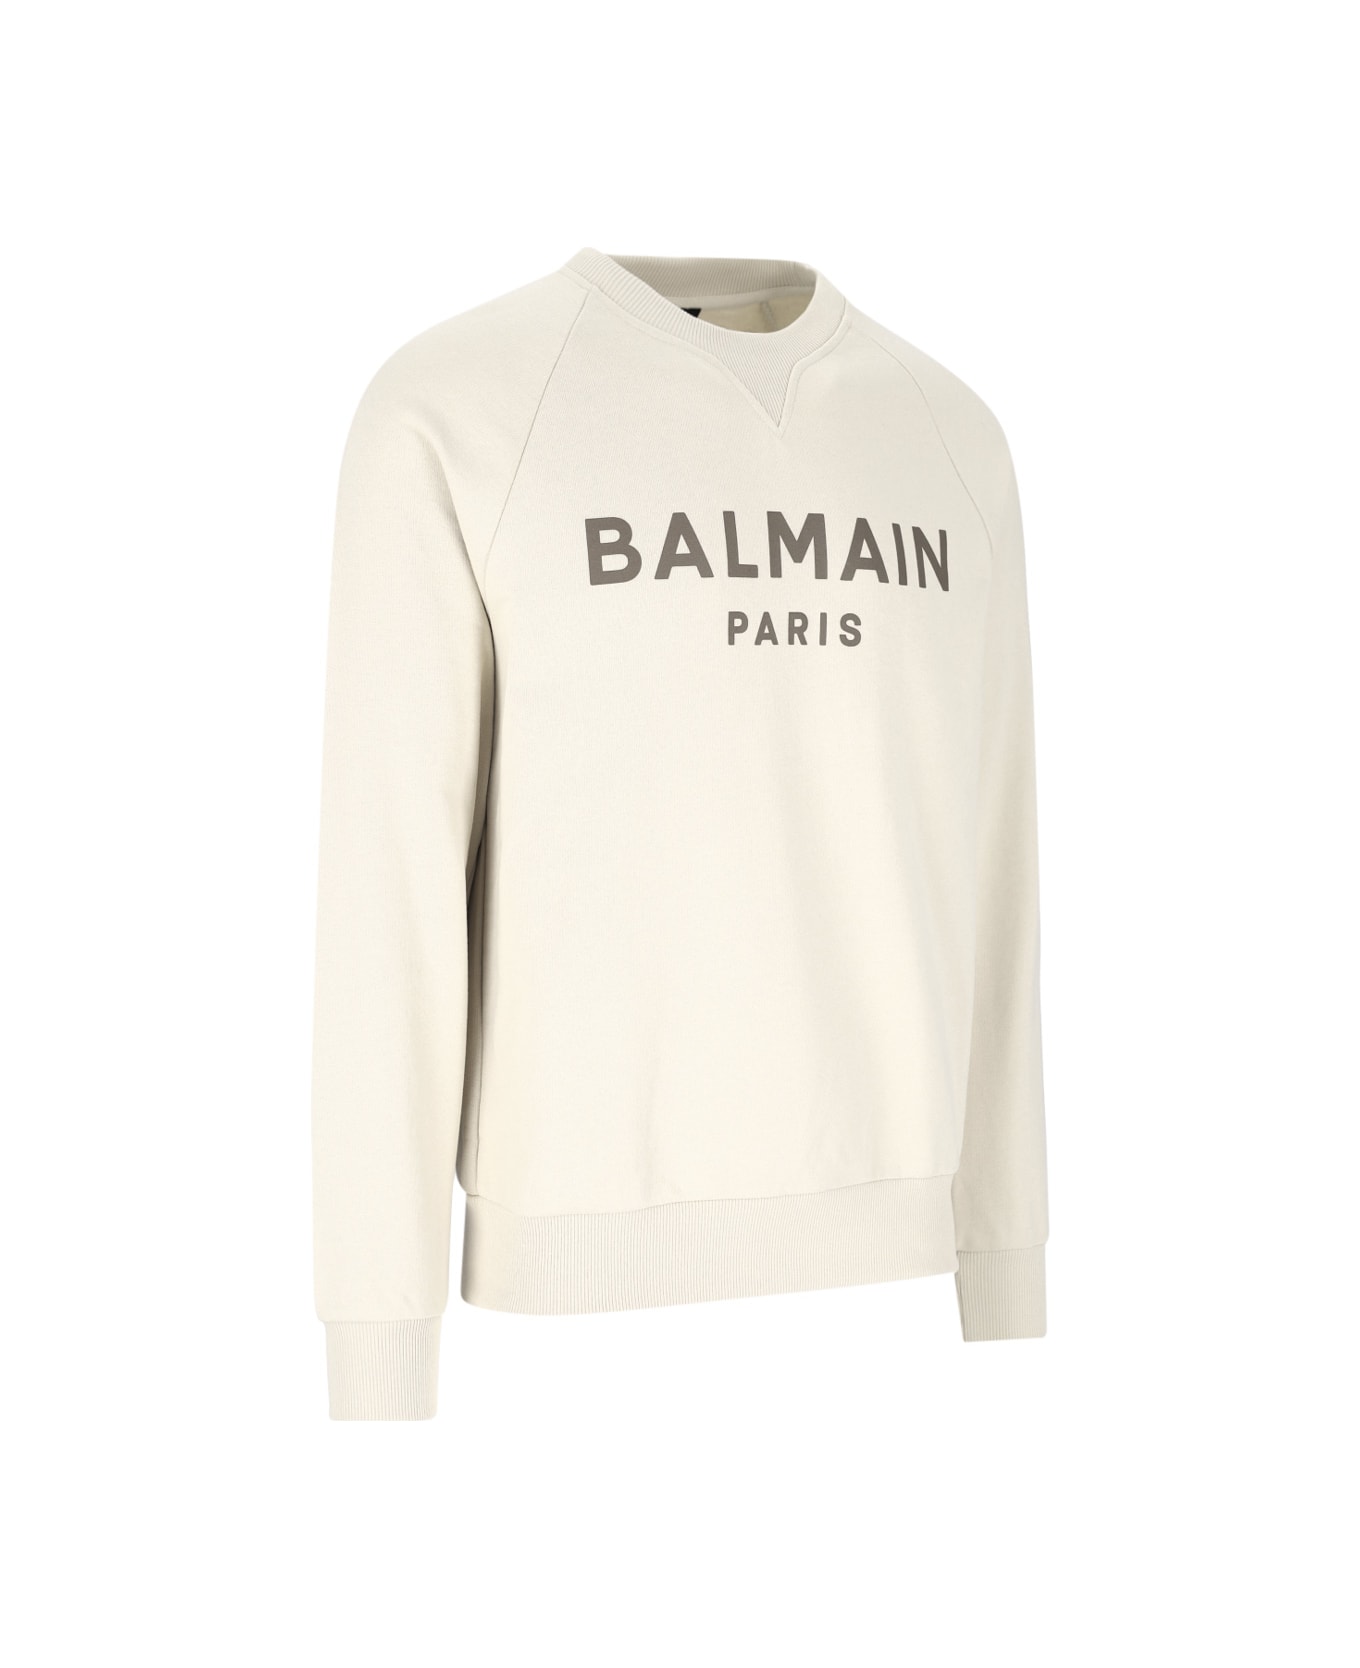 Balmain Logo Printed Crewneck Sweatshirt - White フリース